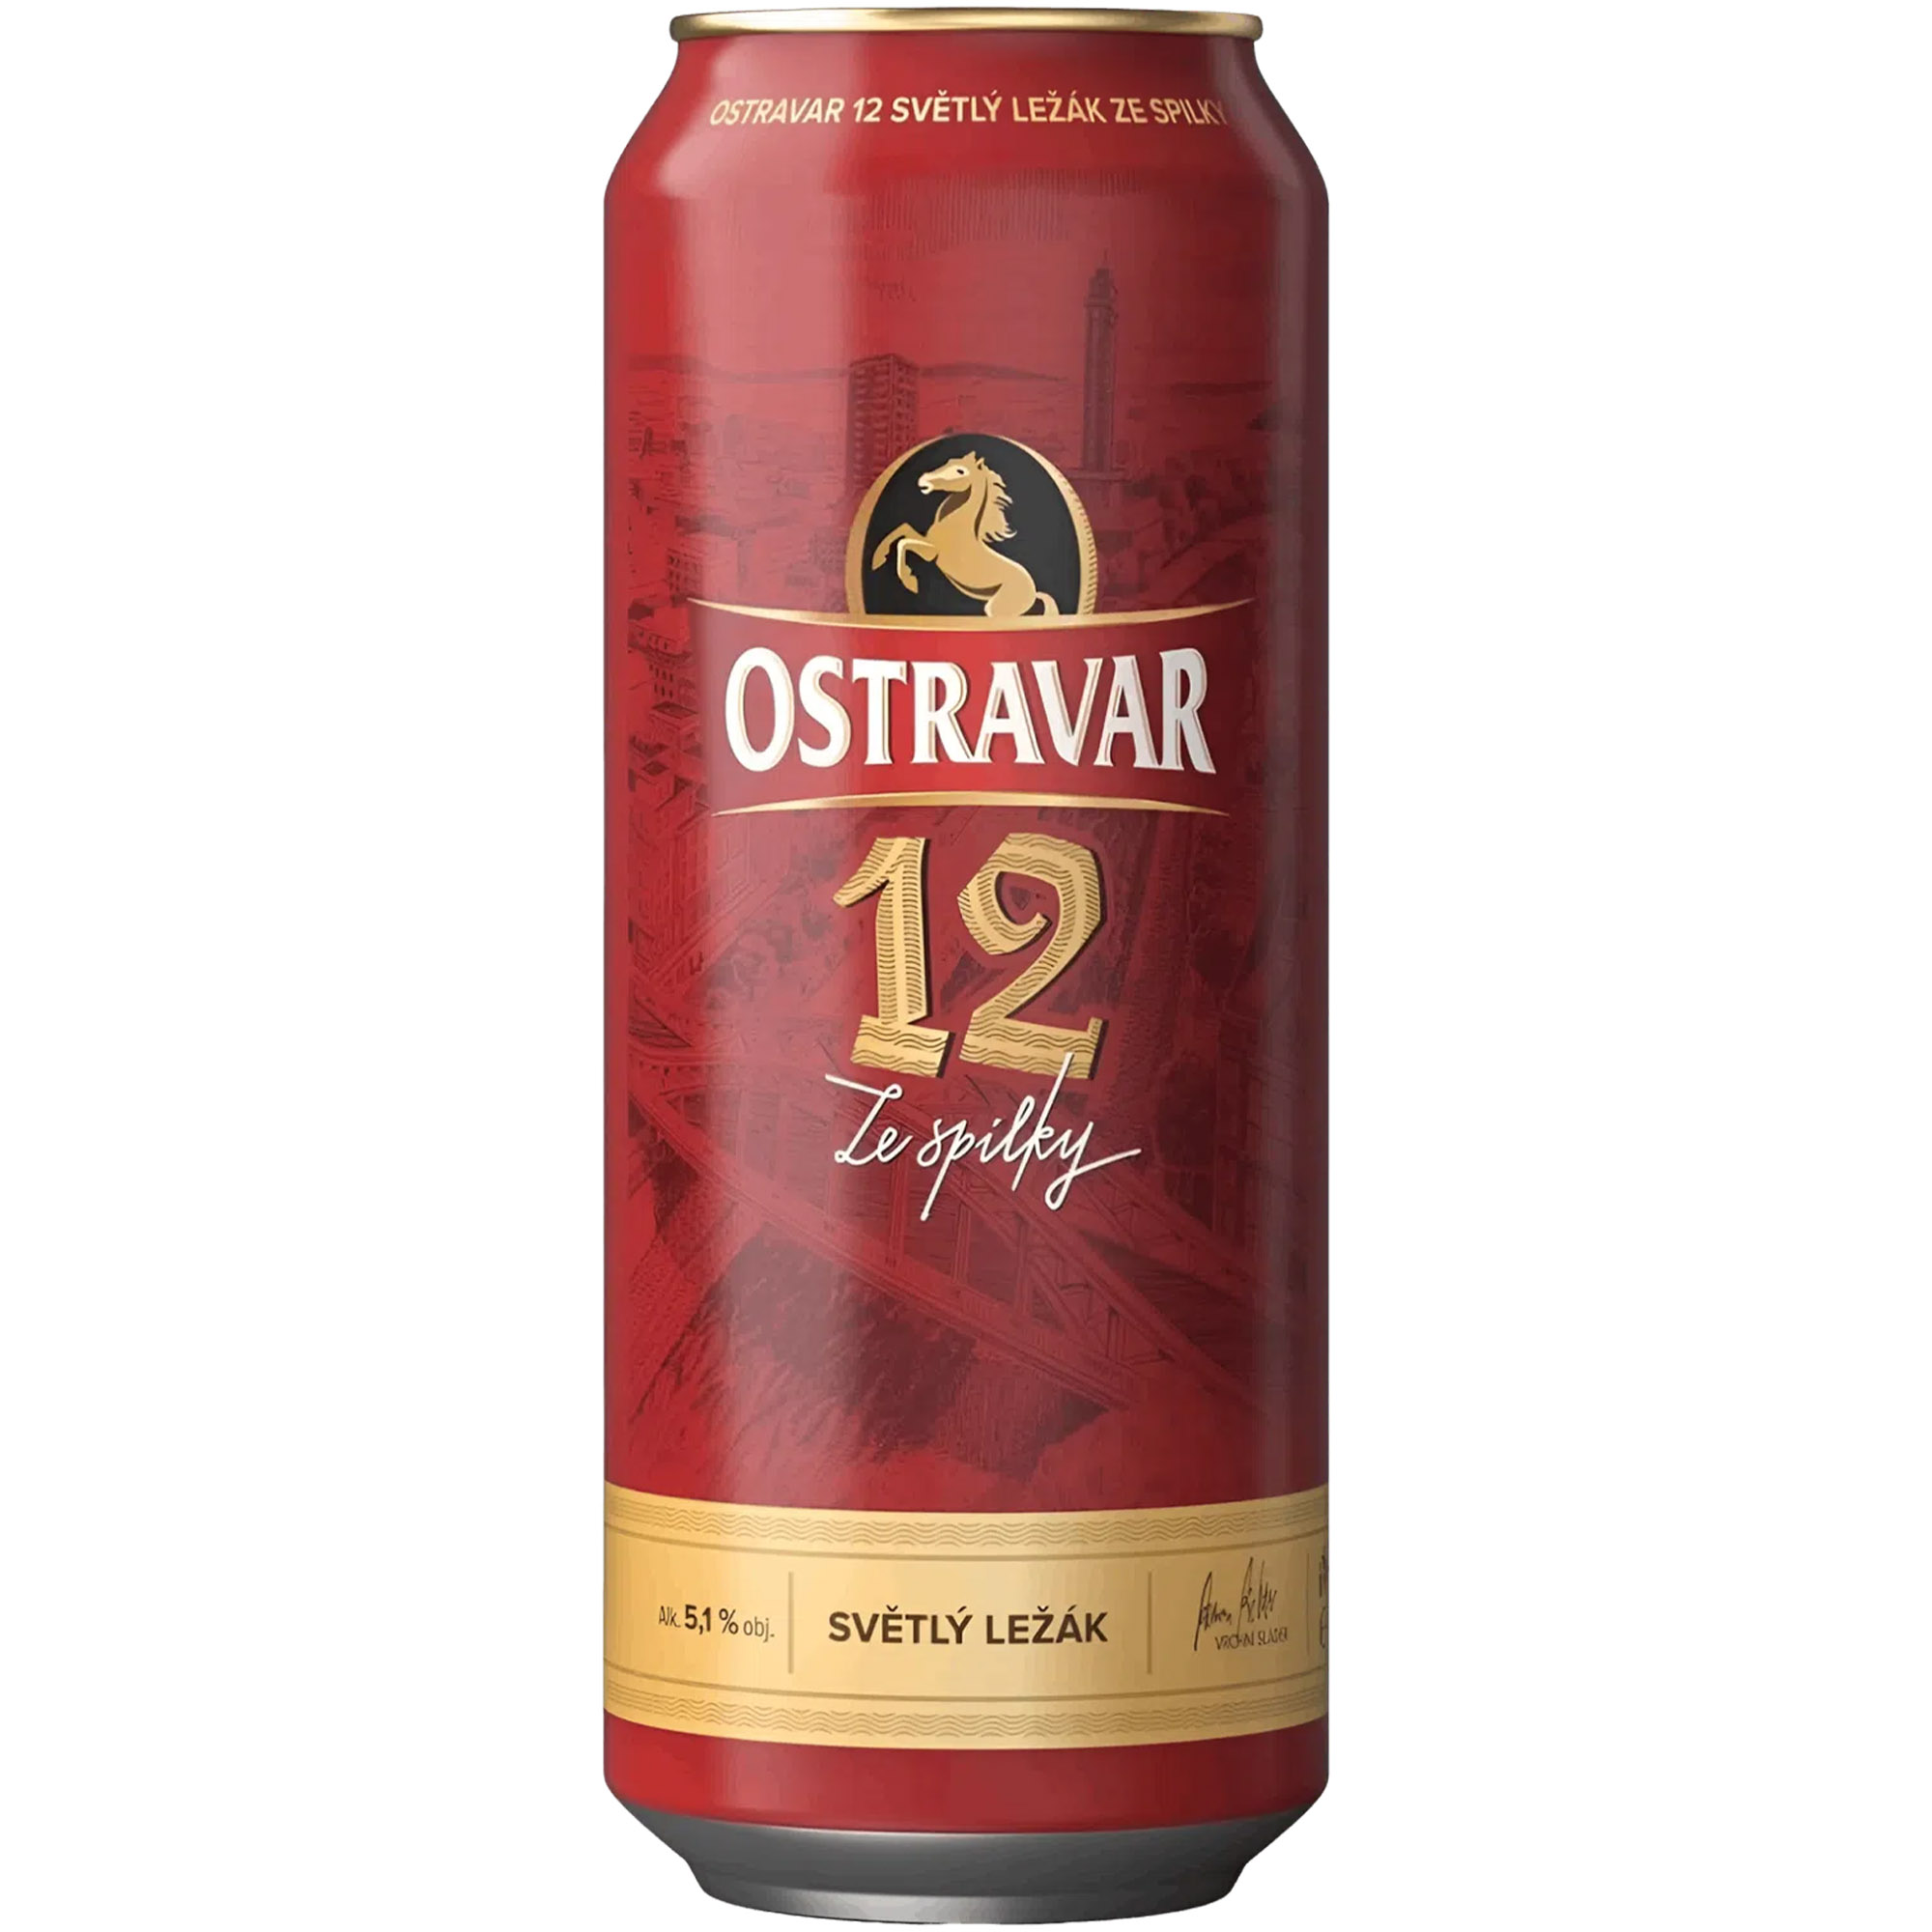 Пиво Ostravar 12 светлое 5.1% 4 шт. х 0.5 л ж/б - фото 2